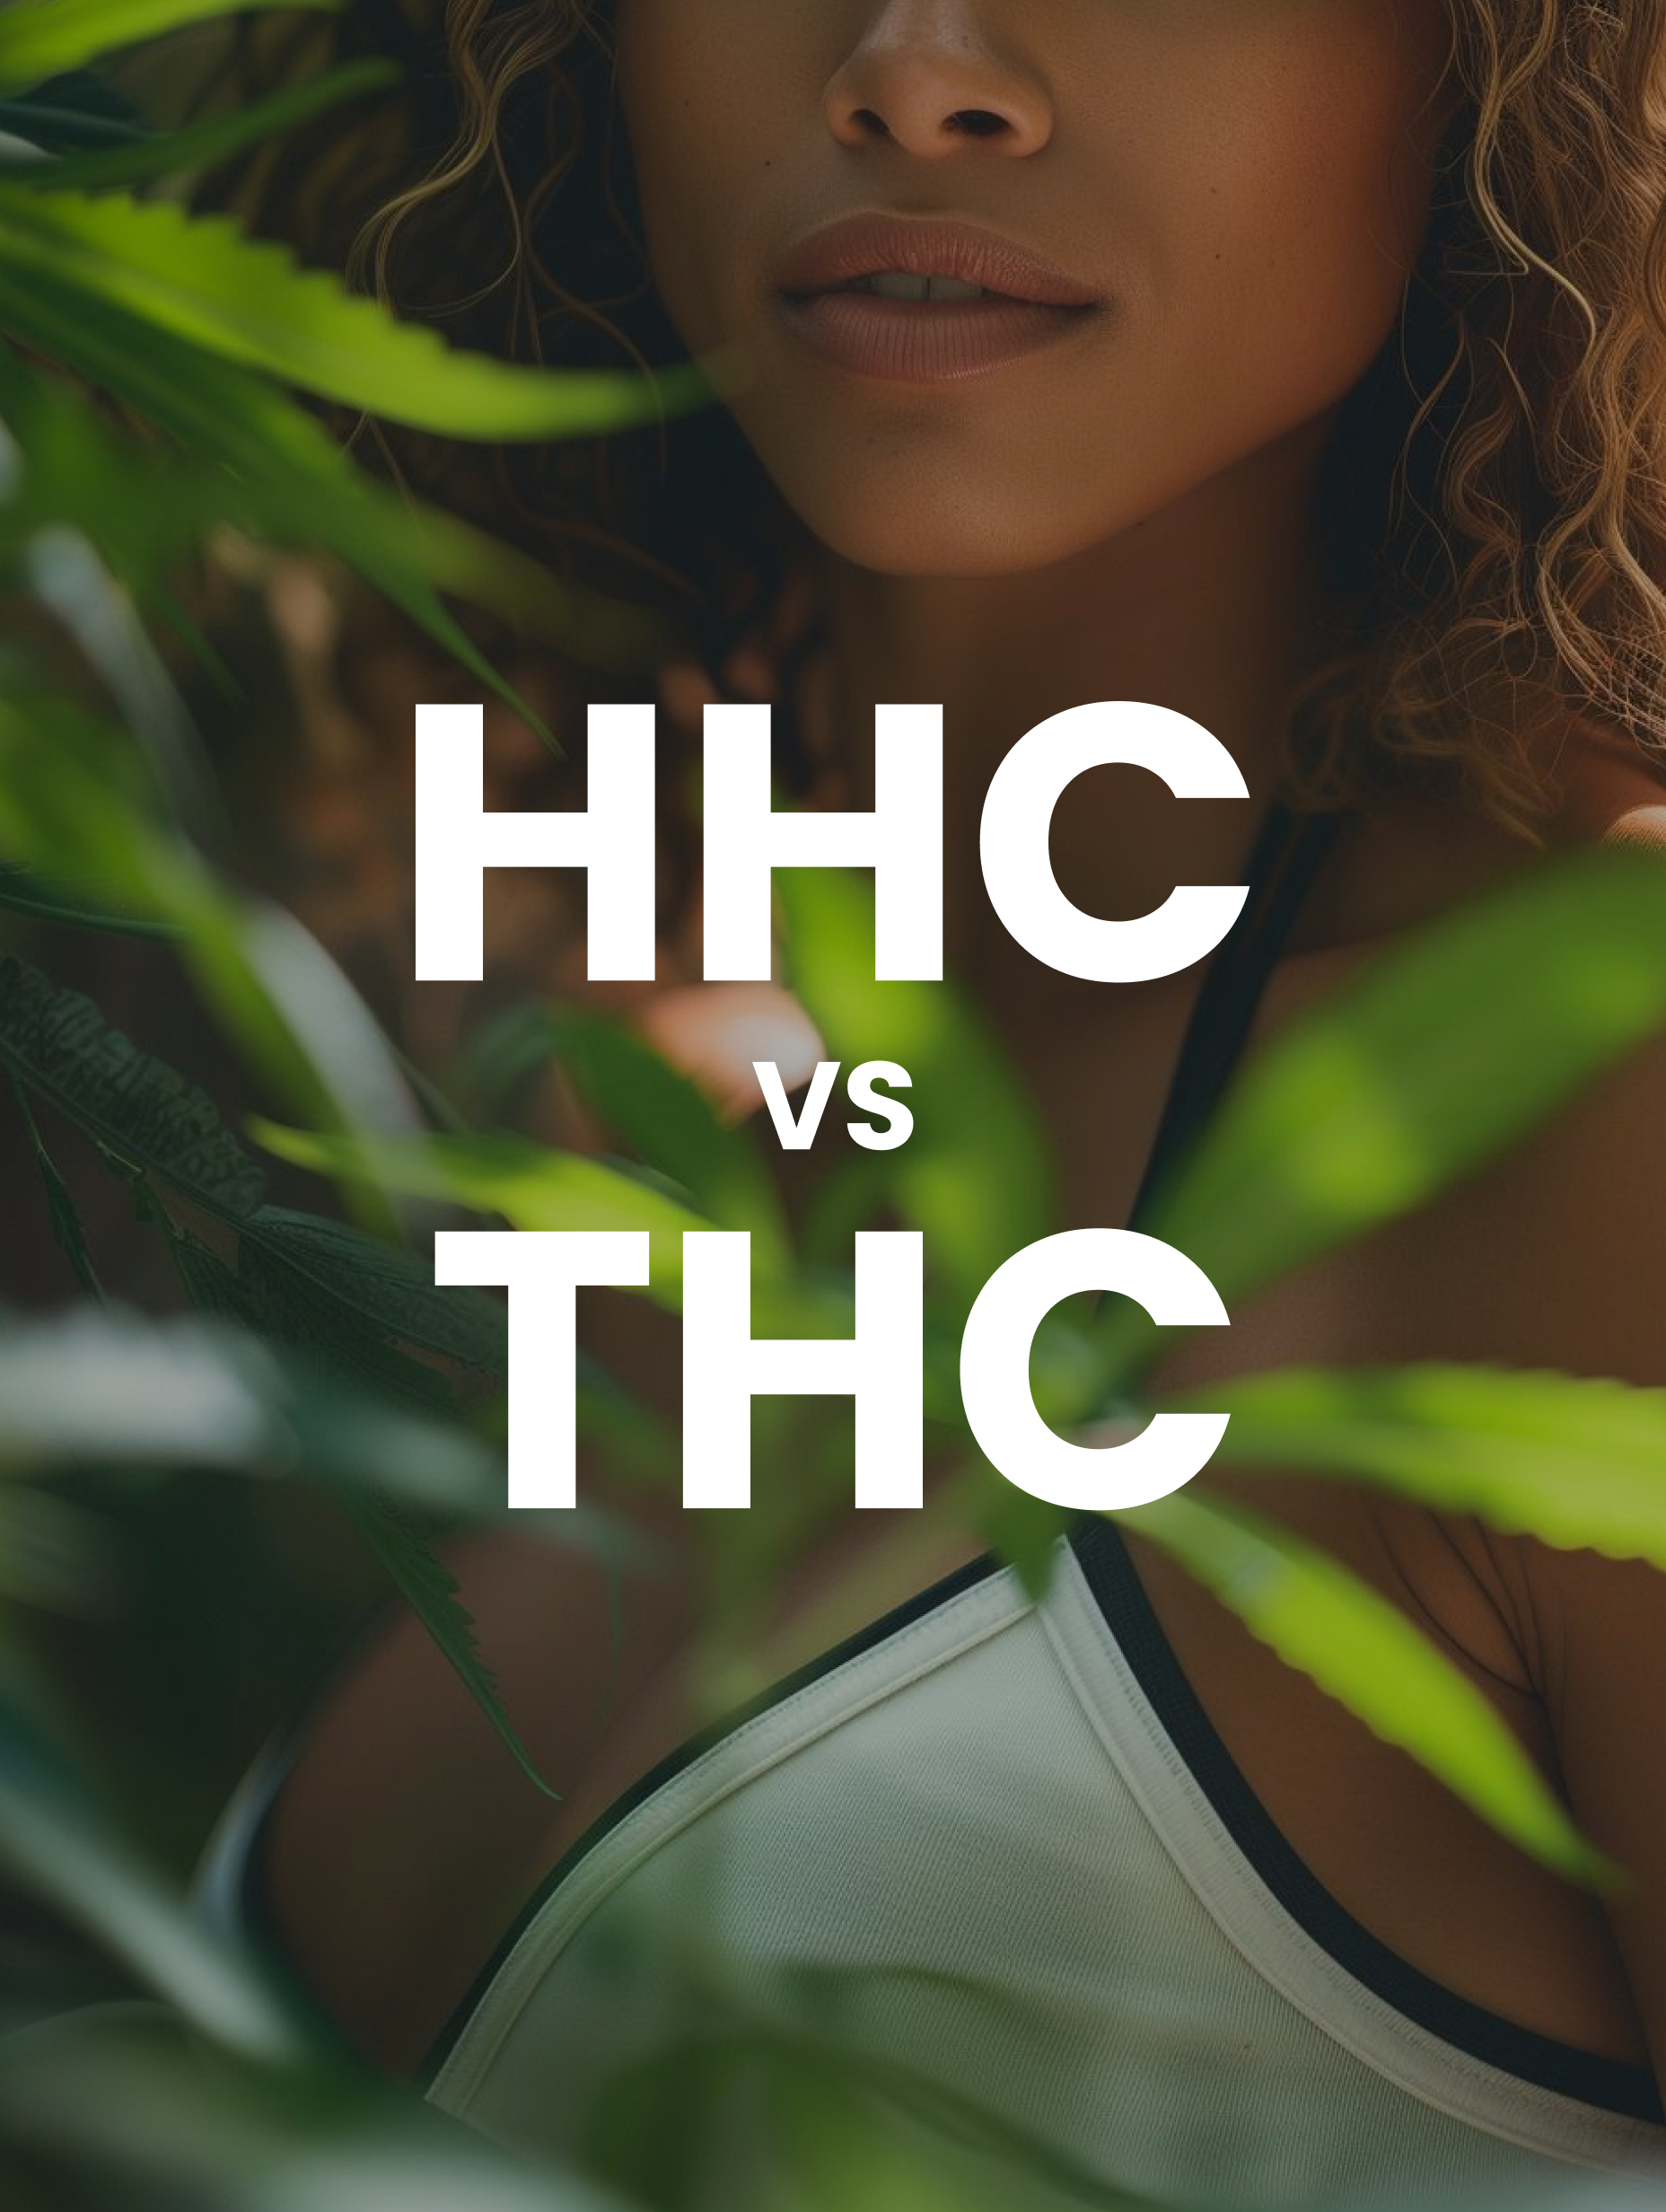 hhc vs thc